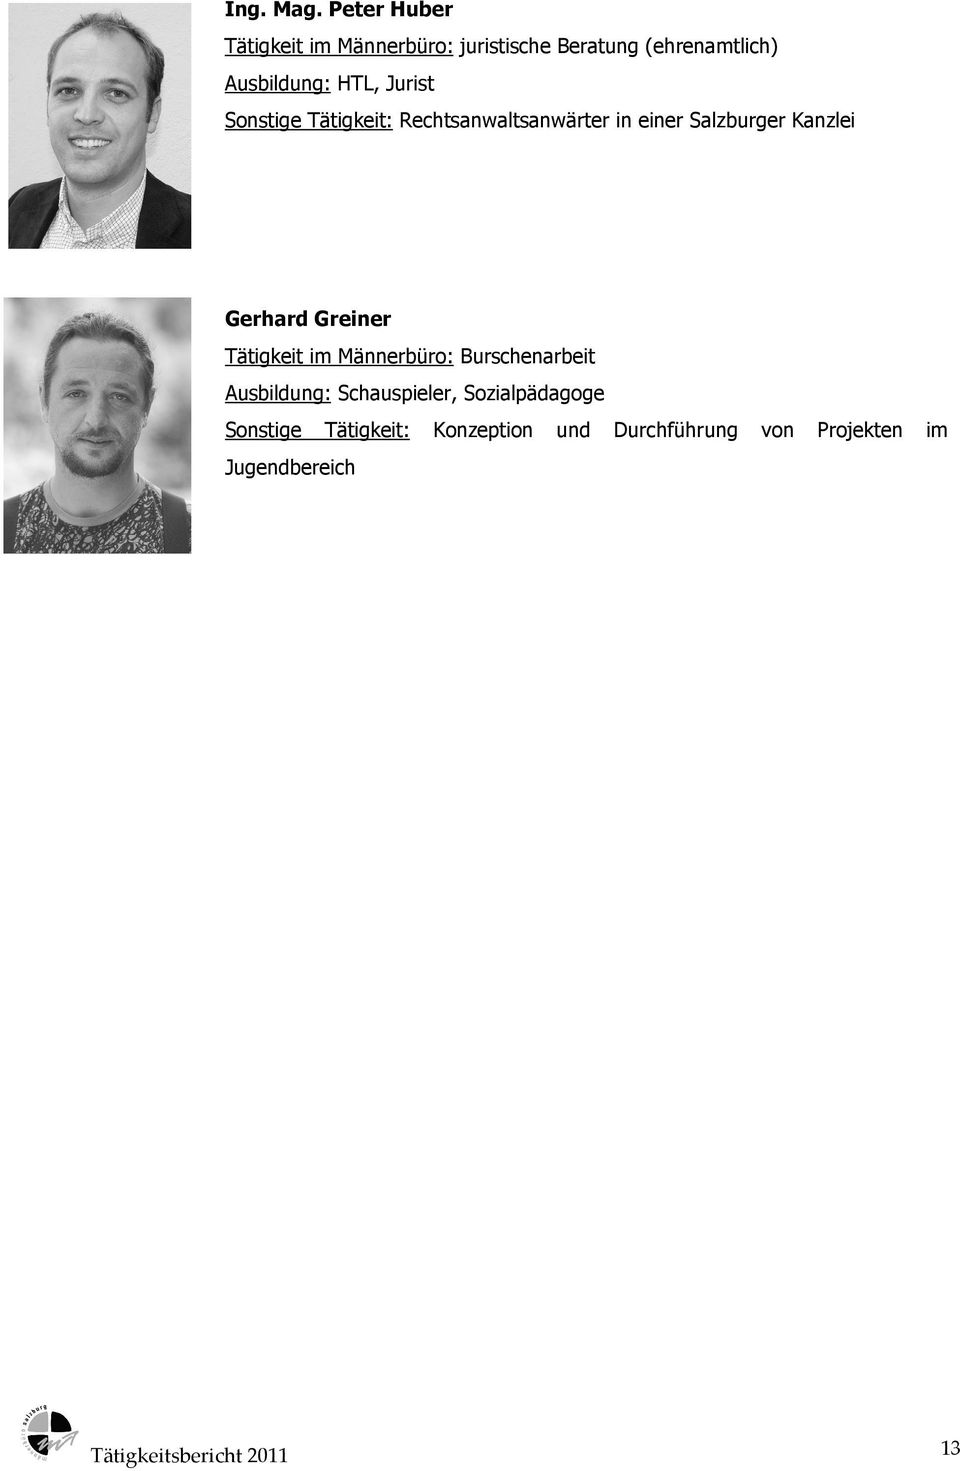 Jurist Sonstige Tätigkeit: Rechtsanwaltsanwärter in einer Salzburger Kanzlei Gerhard Greiner